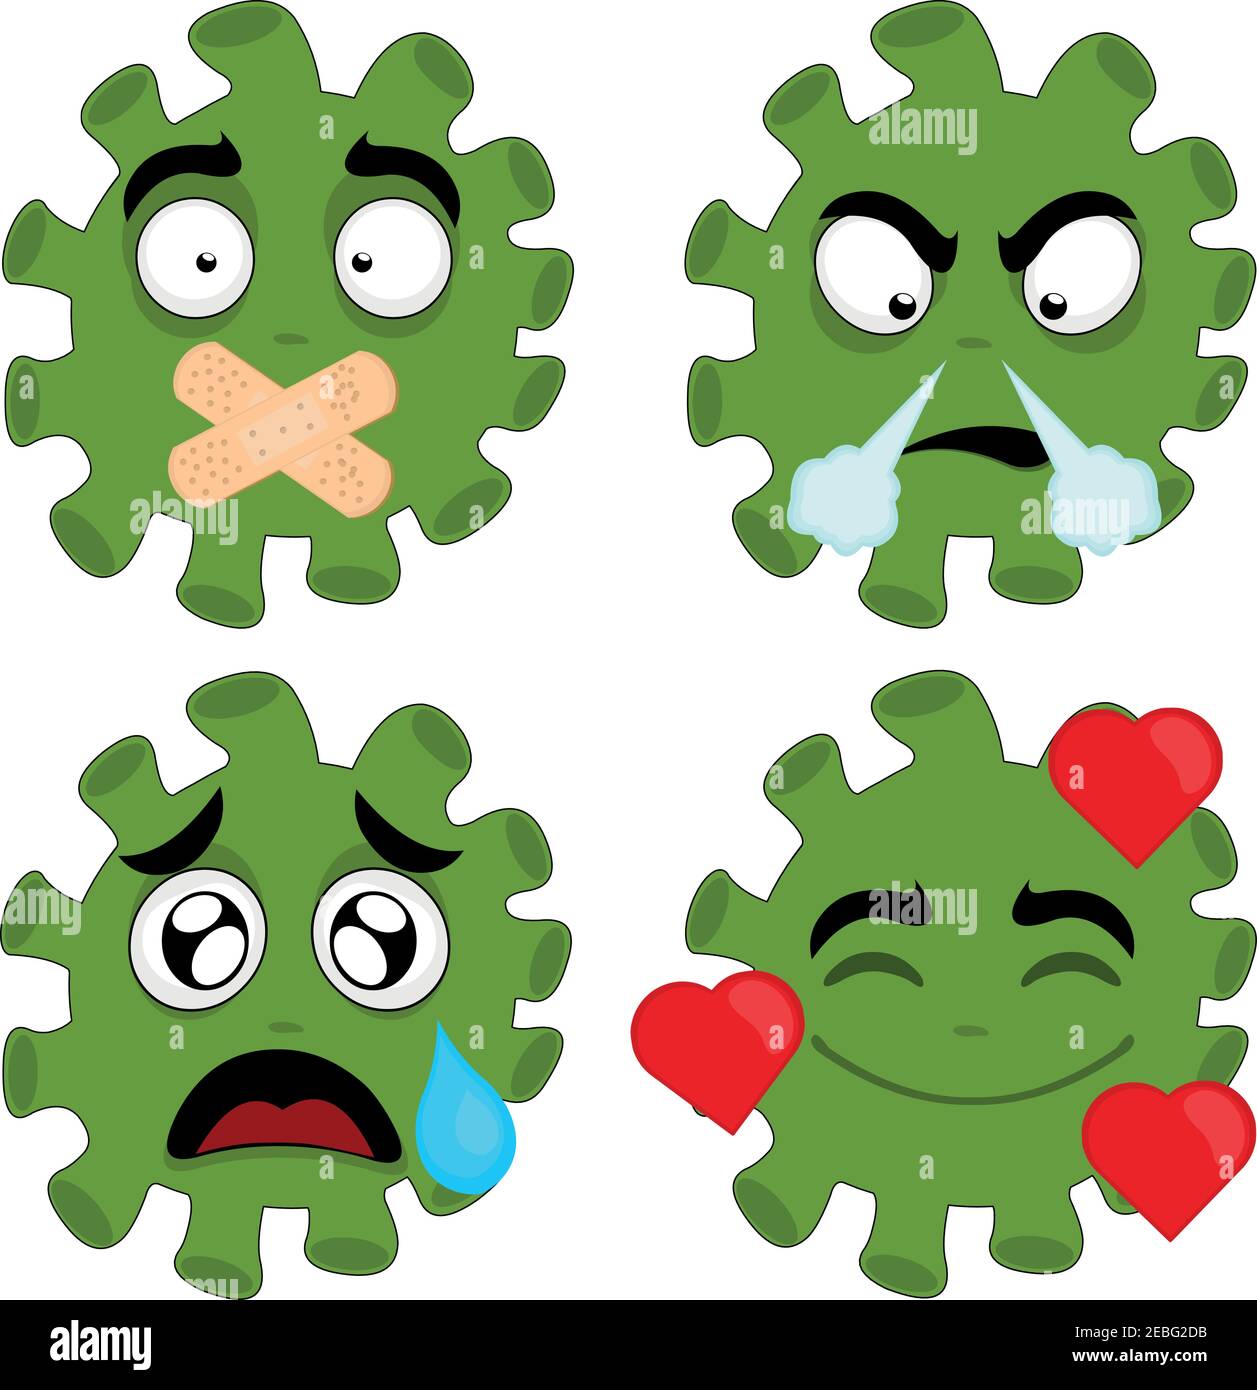 Illustrazione vettoriale di emoticon di coronavirus cartoon con espressioni di rabbia, paura, tristezza, amore e con bocca chiusa con bande adesive Illustrazione Vettoriale